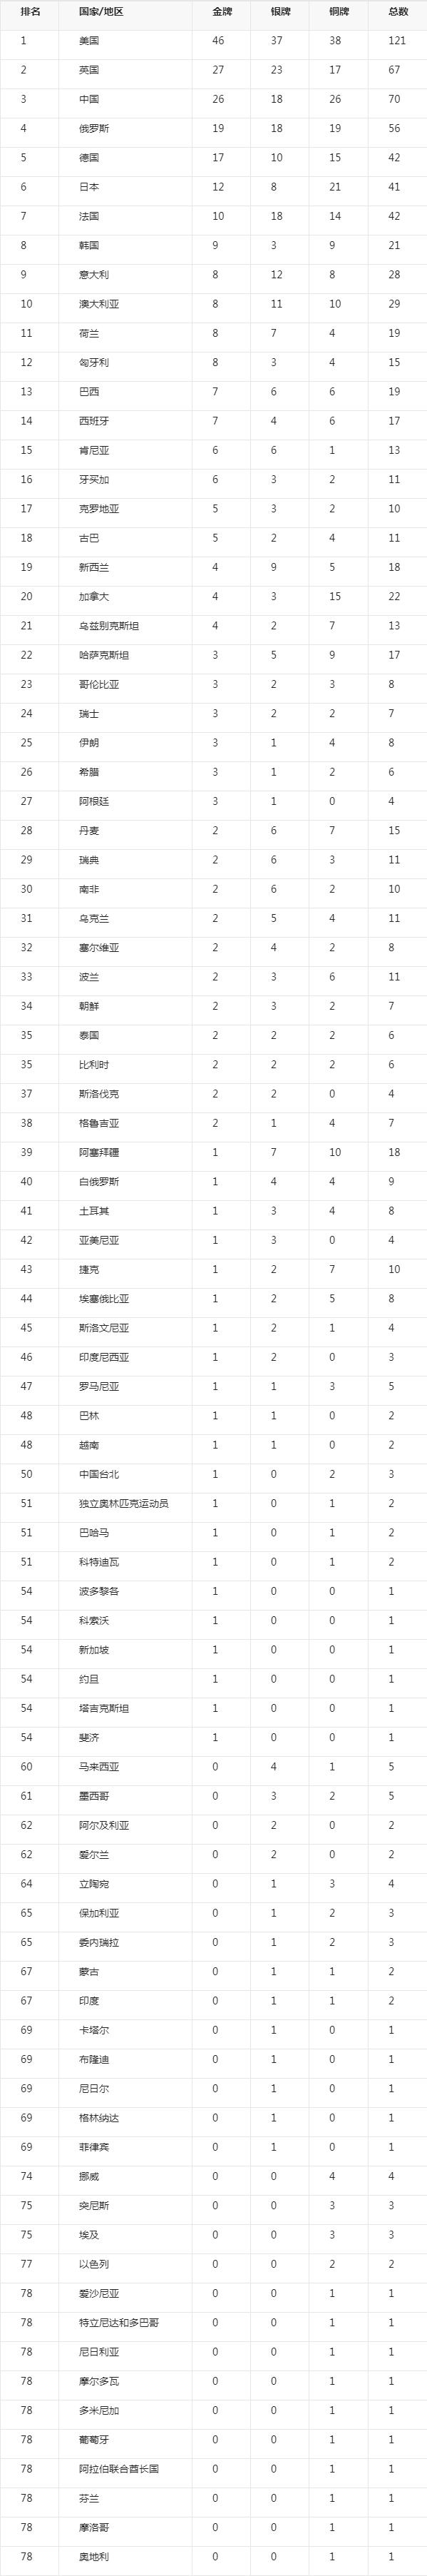 北京奥运会奖牌榜排名，北京奥运会奖牌榜排名兴奋剂